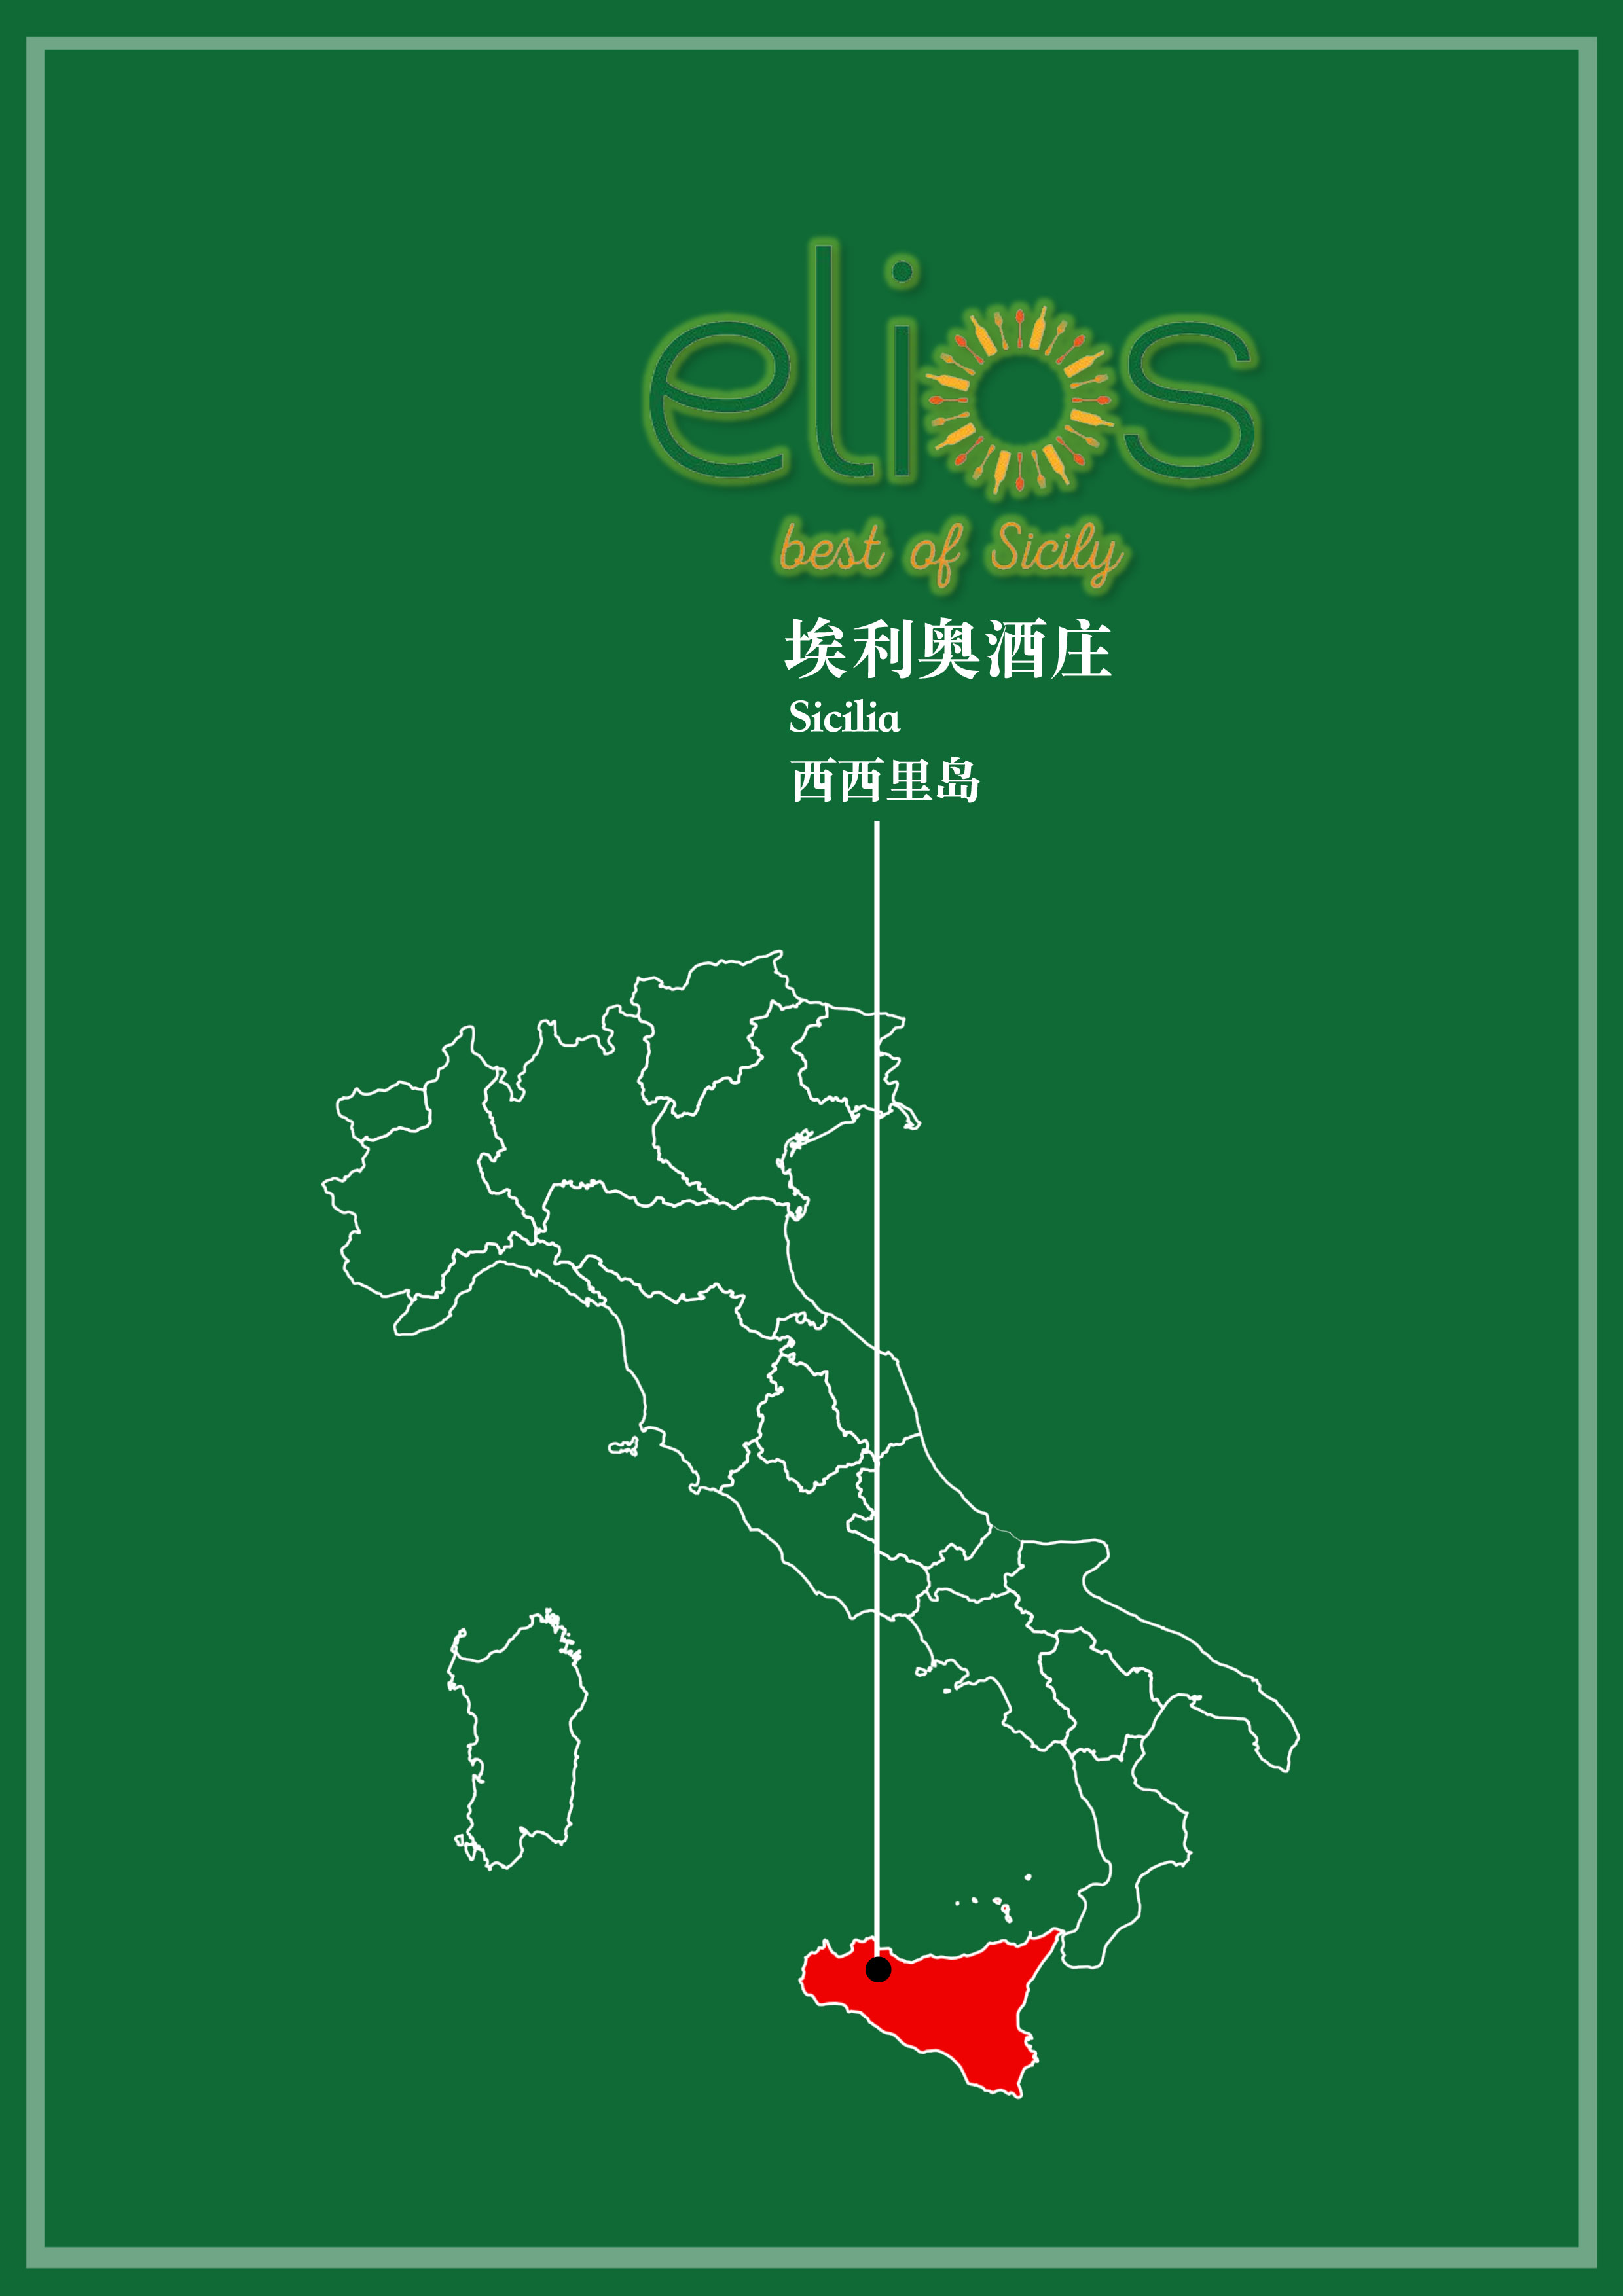 ELIOS目录2021-1.jpg